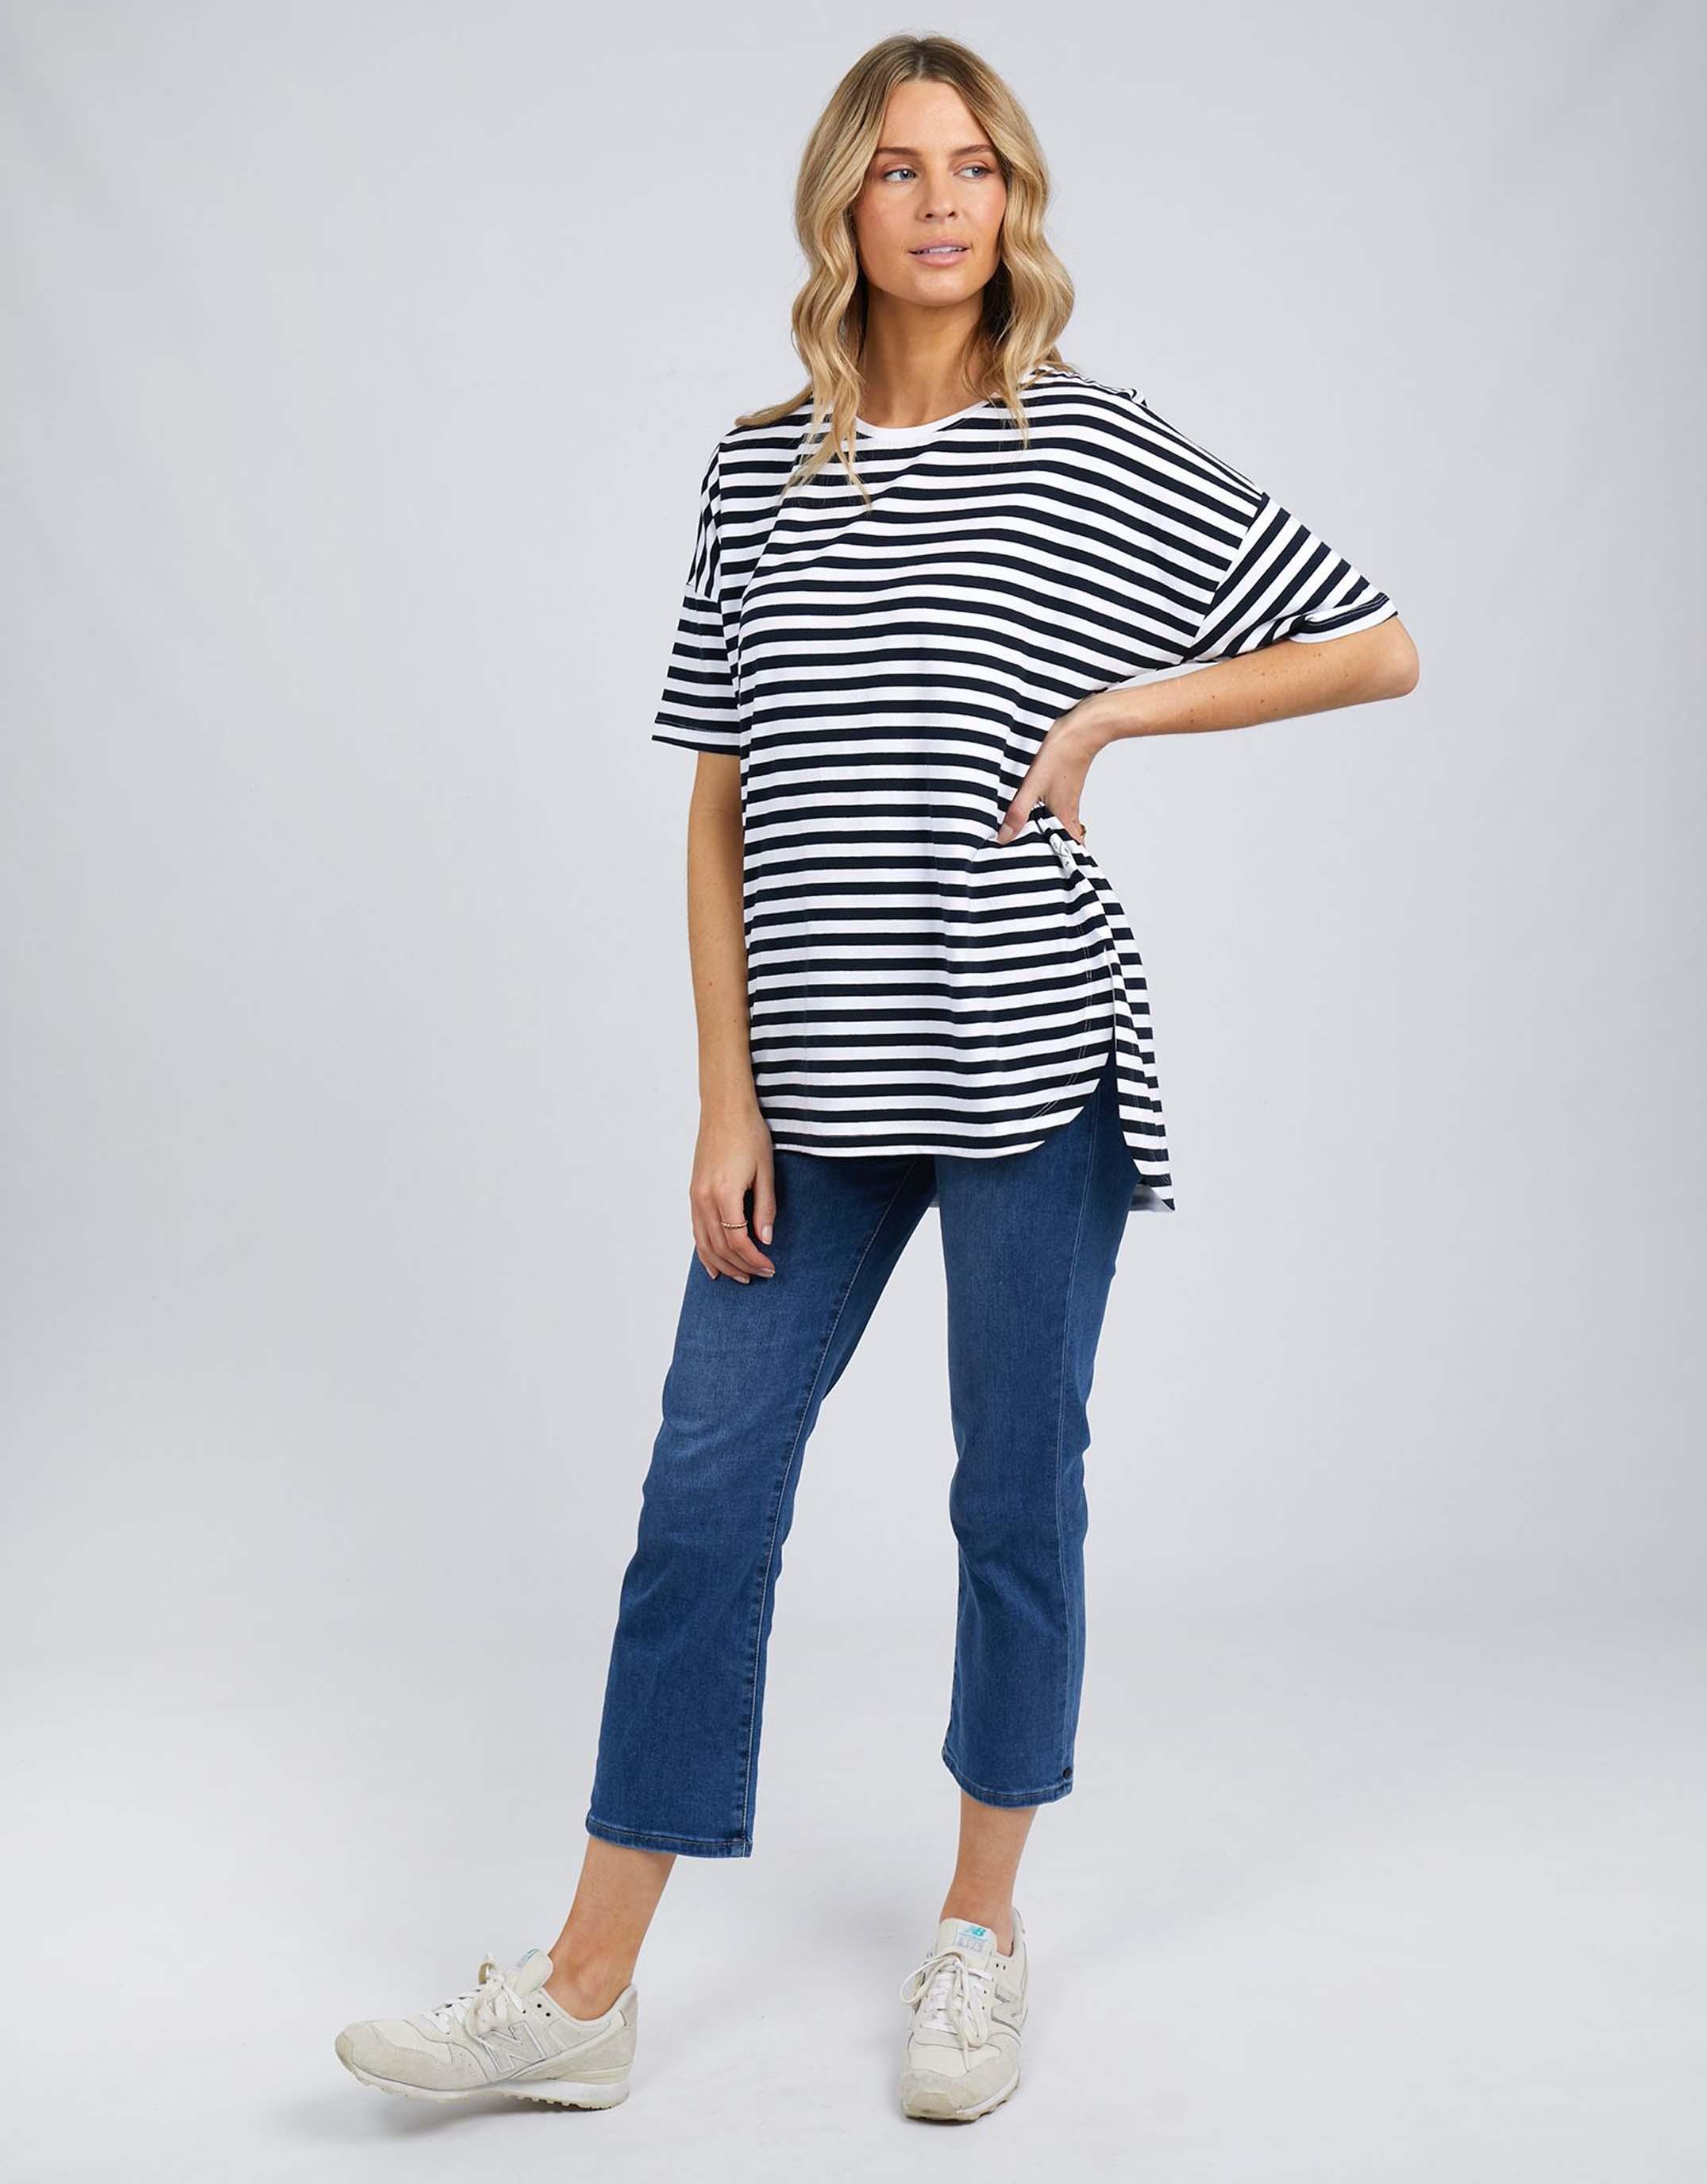 Elm - Lauren Stripe Short Sleeve Tee - Navy & White Stripe - White & Co Living Tees & Tanks